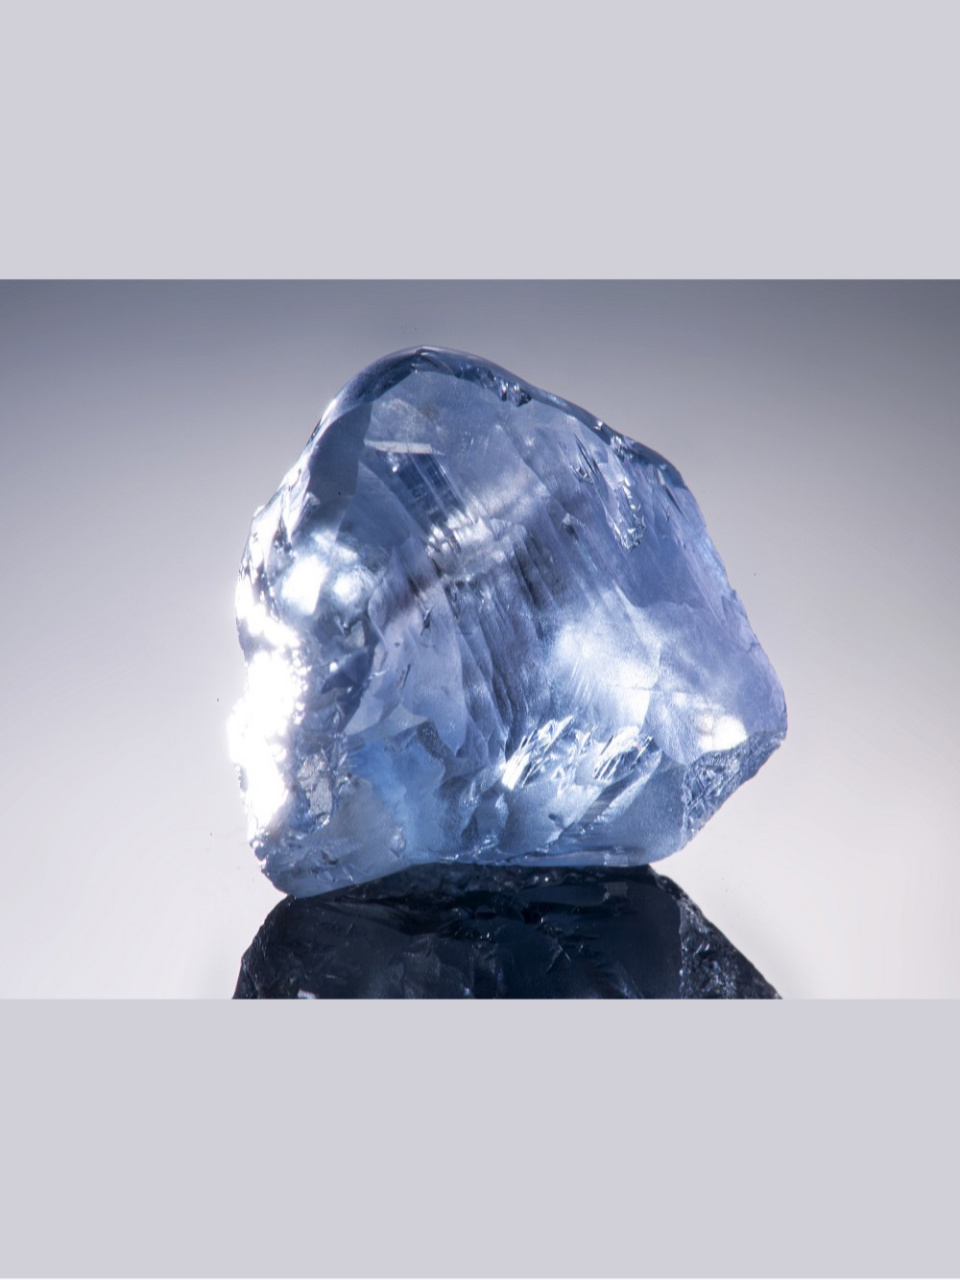 08ct宝石级蓝钻原石,平均每克拉价格为74